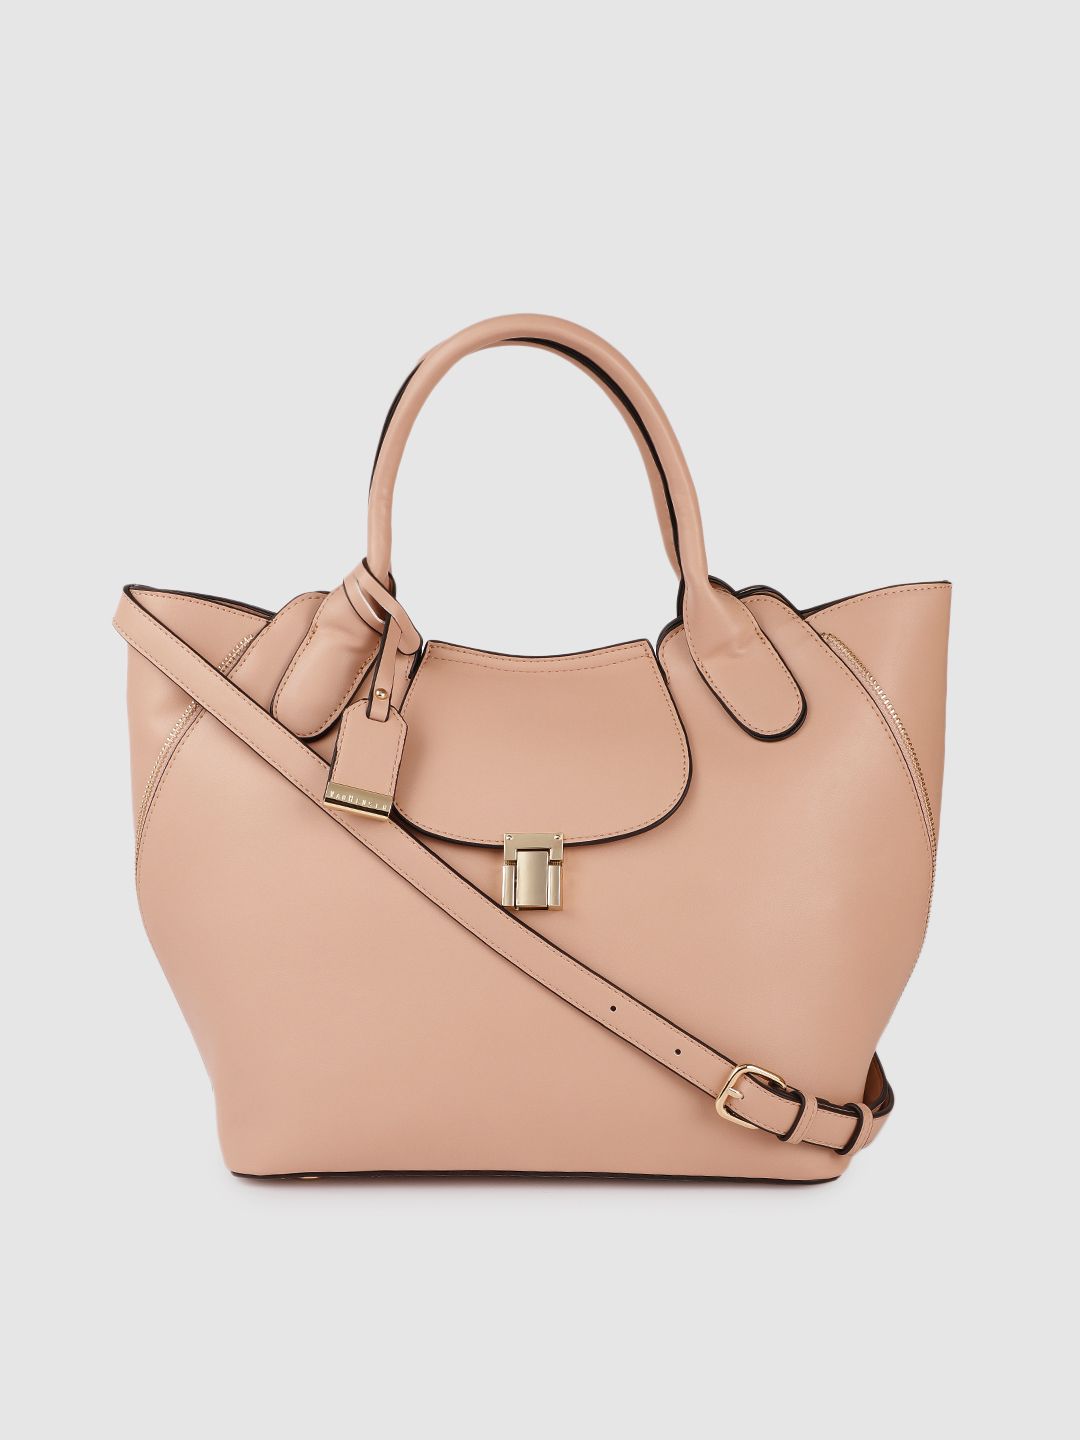 Van Heusen Pink Solid Handheld Bag Price in India